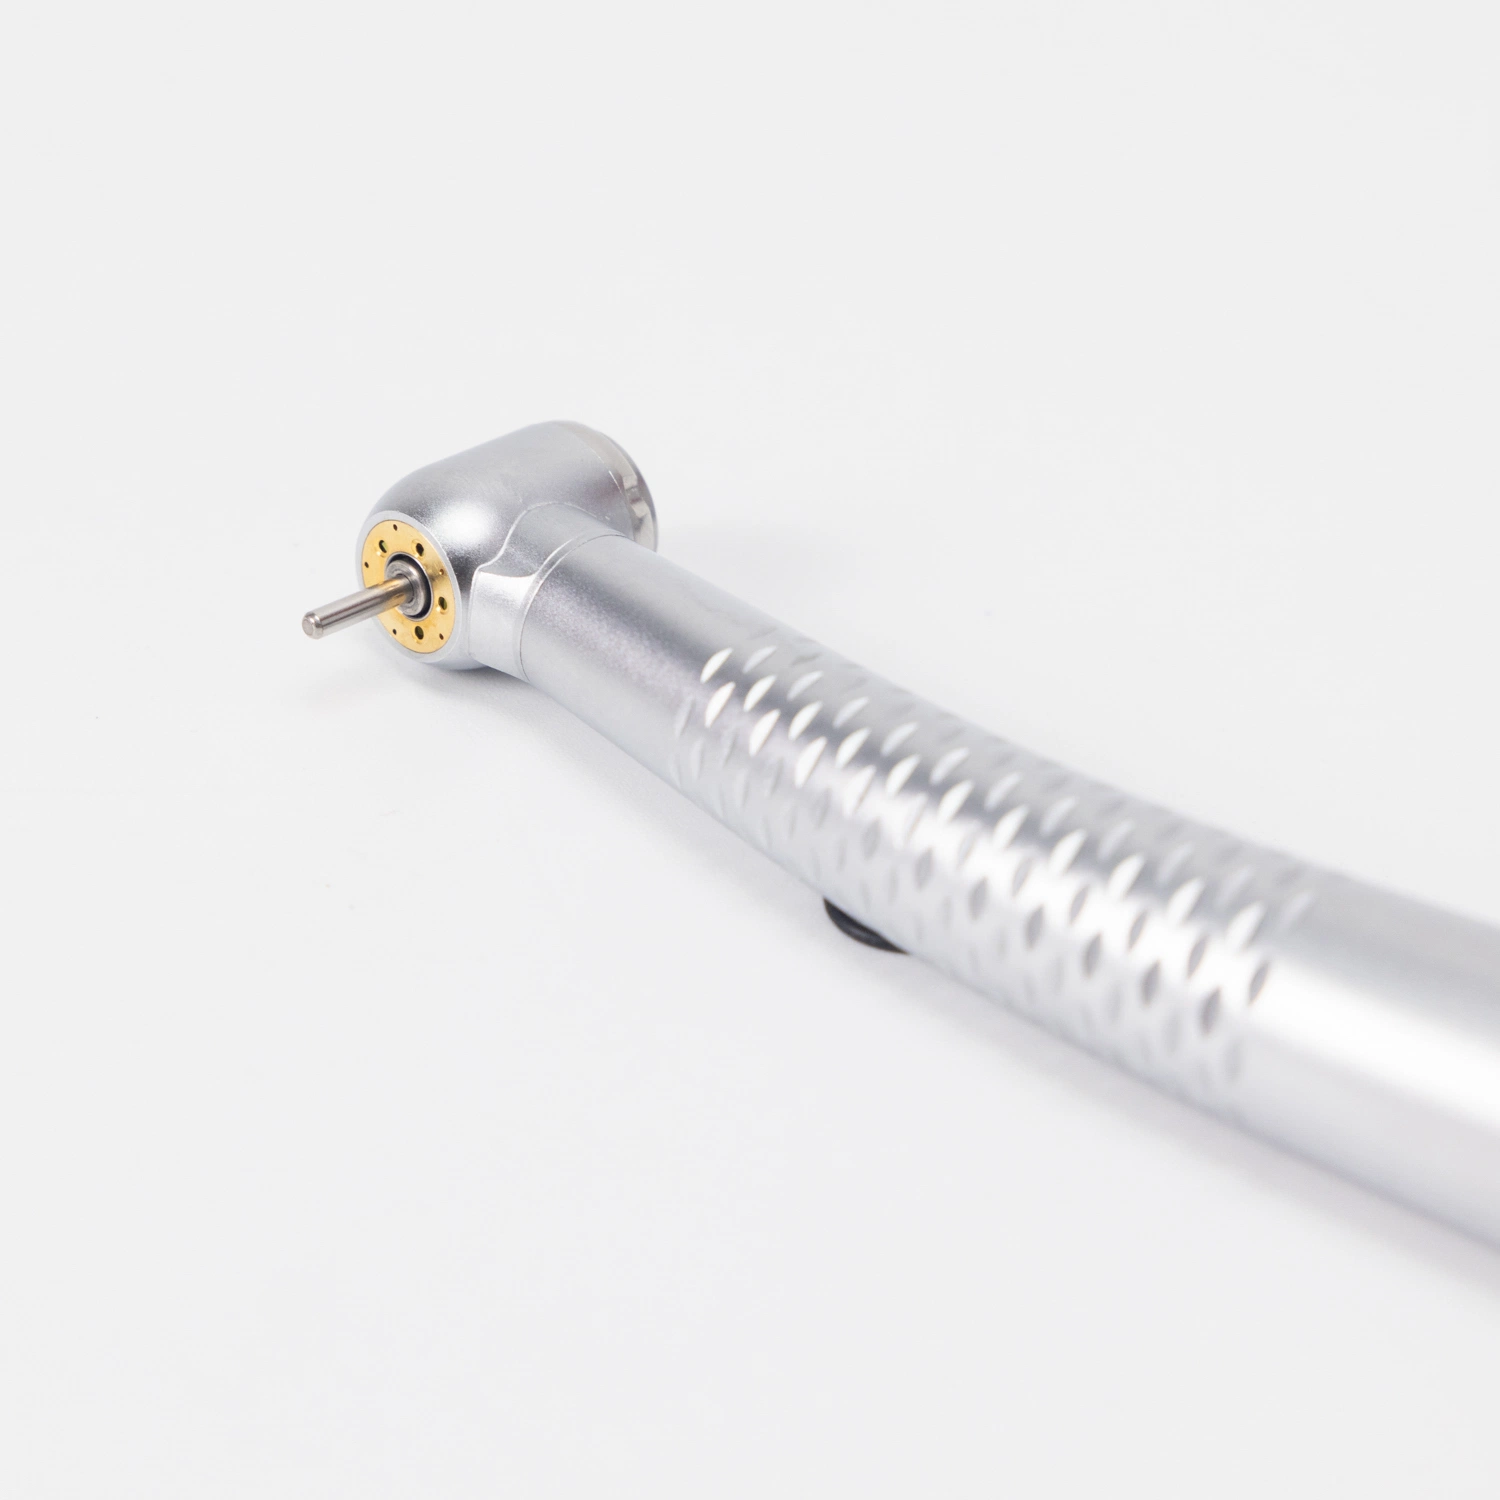 يتضمن مؤشر LED للأسنان التوربين مع المولد الكهربائي سرعة رش داخلية منخفضة زاوية كونترا القطعة اليدوية